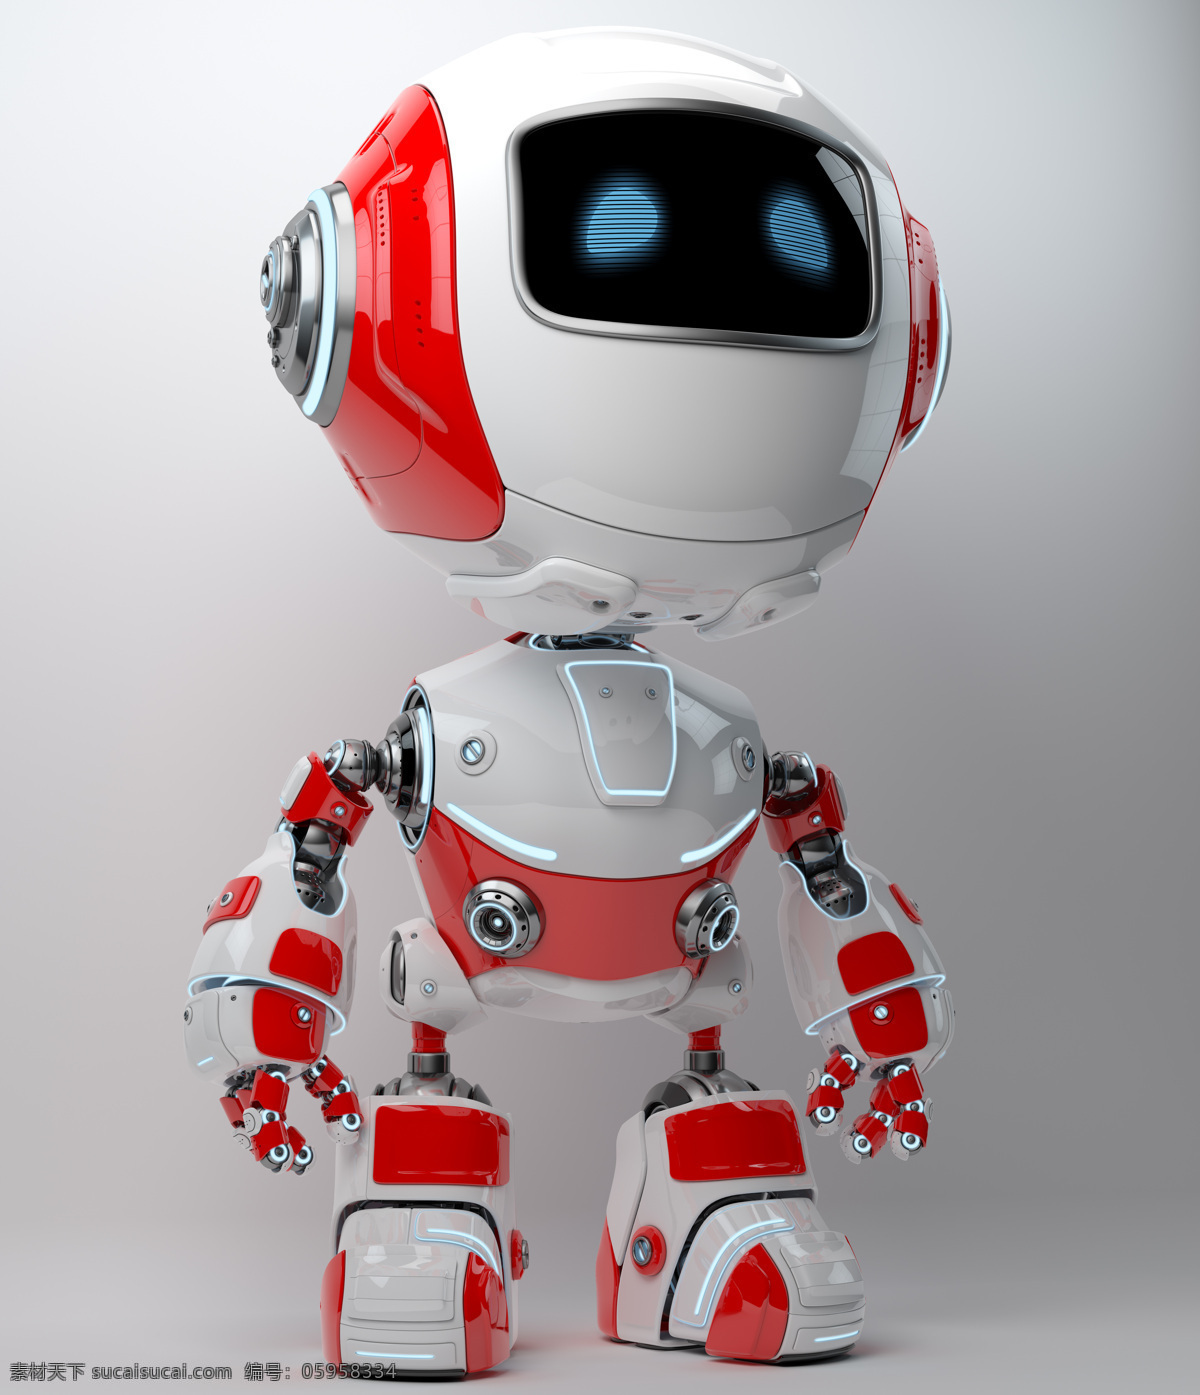 动漫动画 动漫人物 机器人 机器人设计 科幻 科幻世界 外星人 机械人 未来世界 科幻设计 小机器人 智能机器人 人工智能 psd源文件